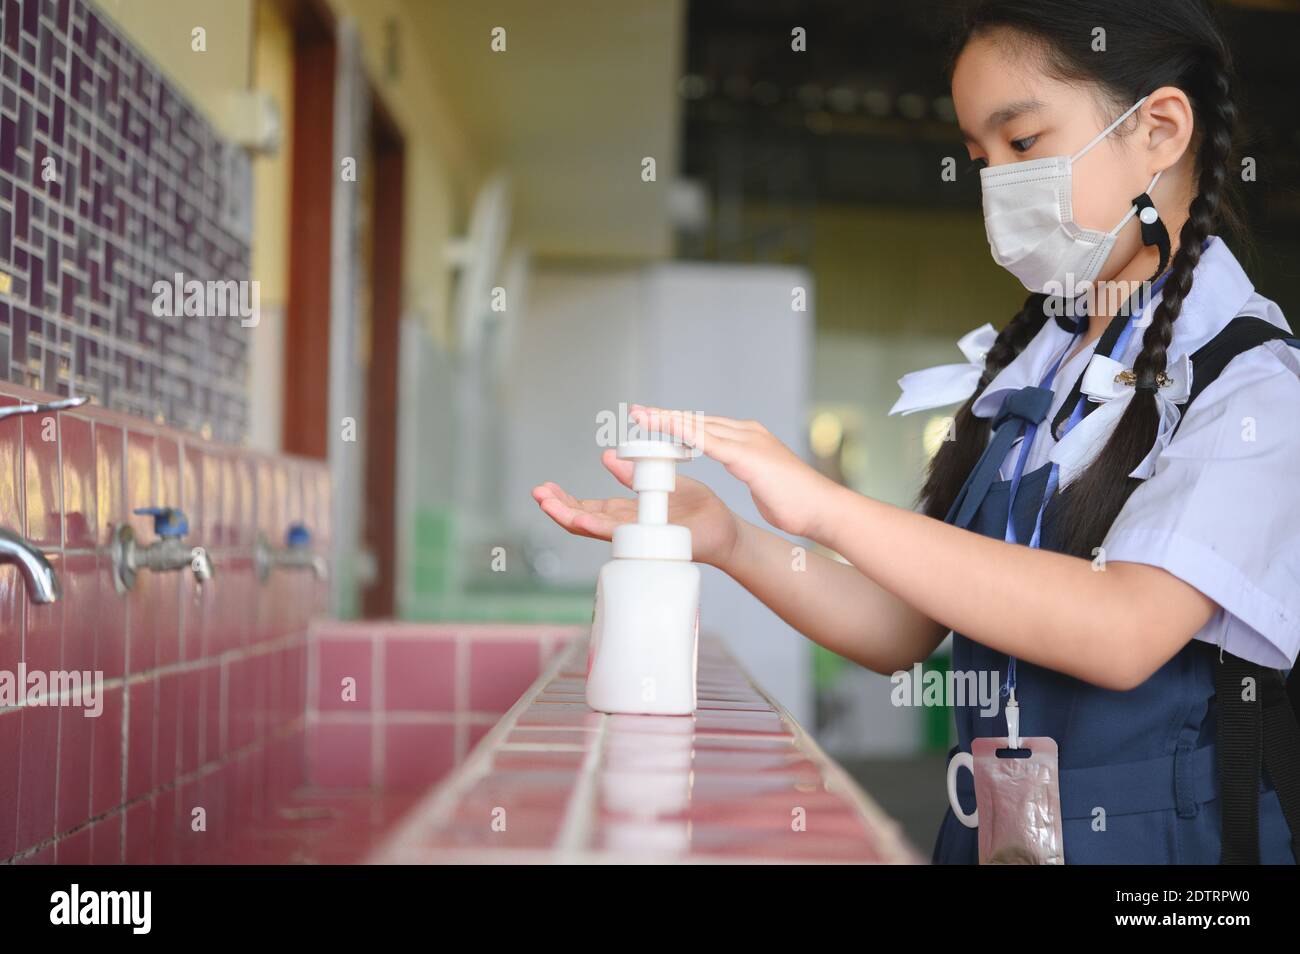 Asiatische Kind Mädchen Schüler waschen Hände und Masken tragen in der Schule. Schule aus der Sperre wieder öffnen. Covid-19 Coronavirus-Pandemie. Neue Normalität in der Schule. Stockfoto